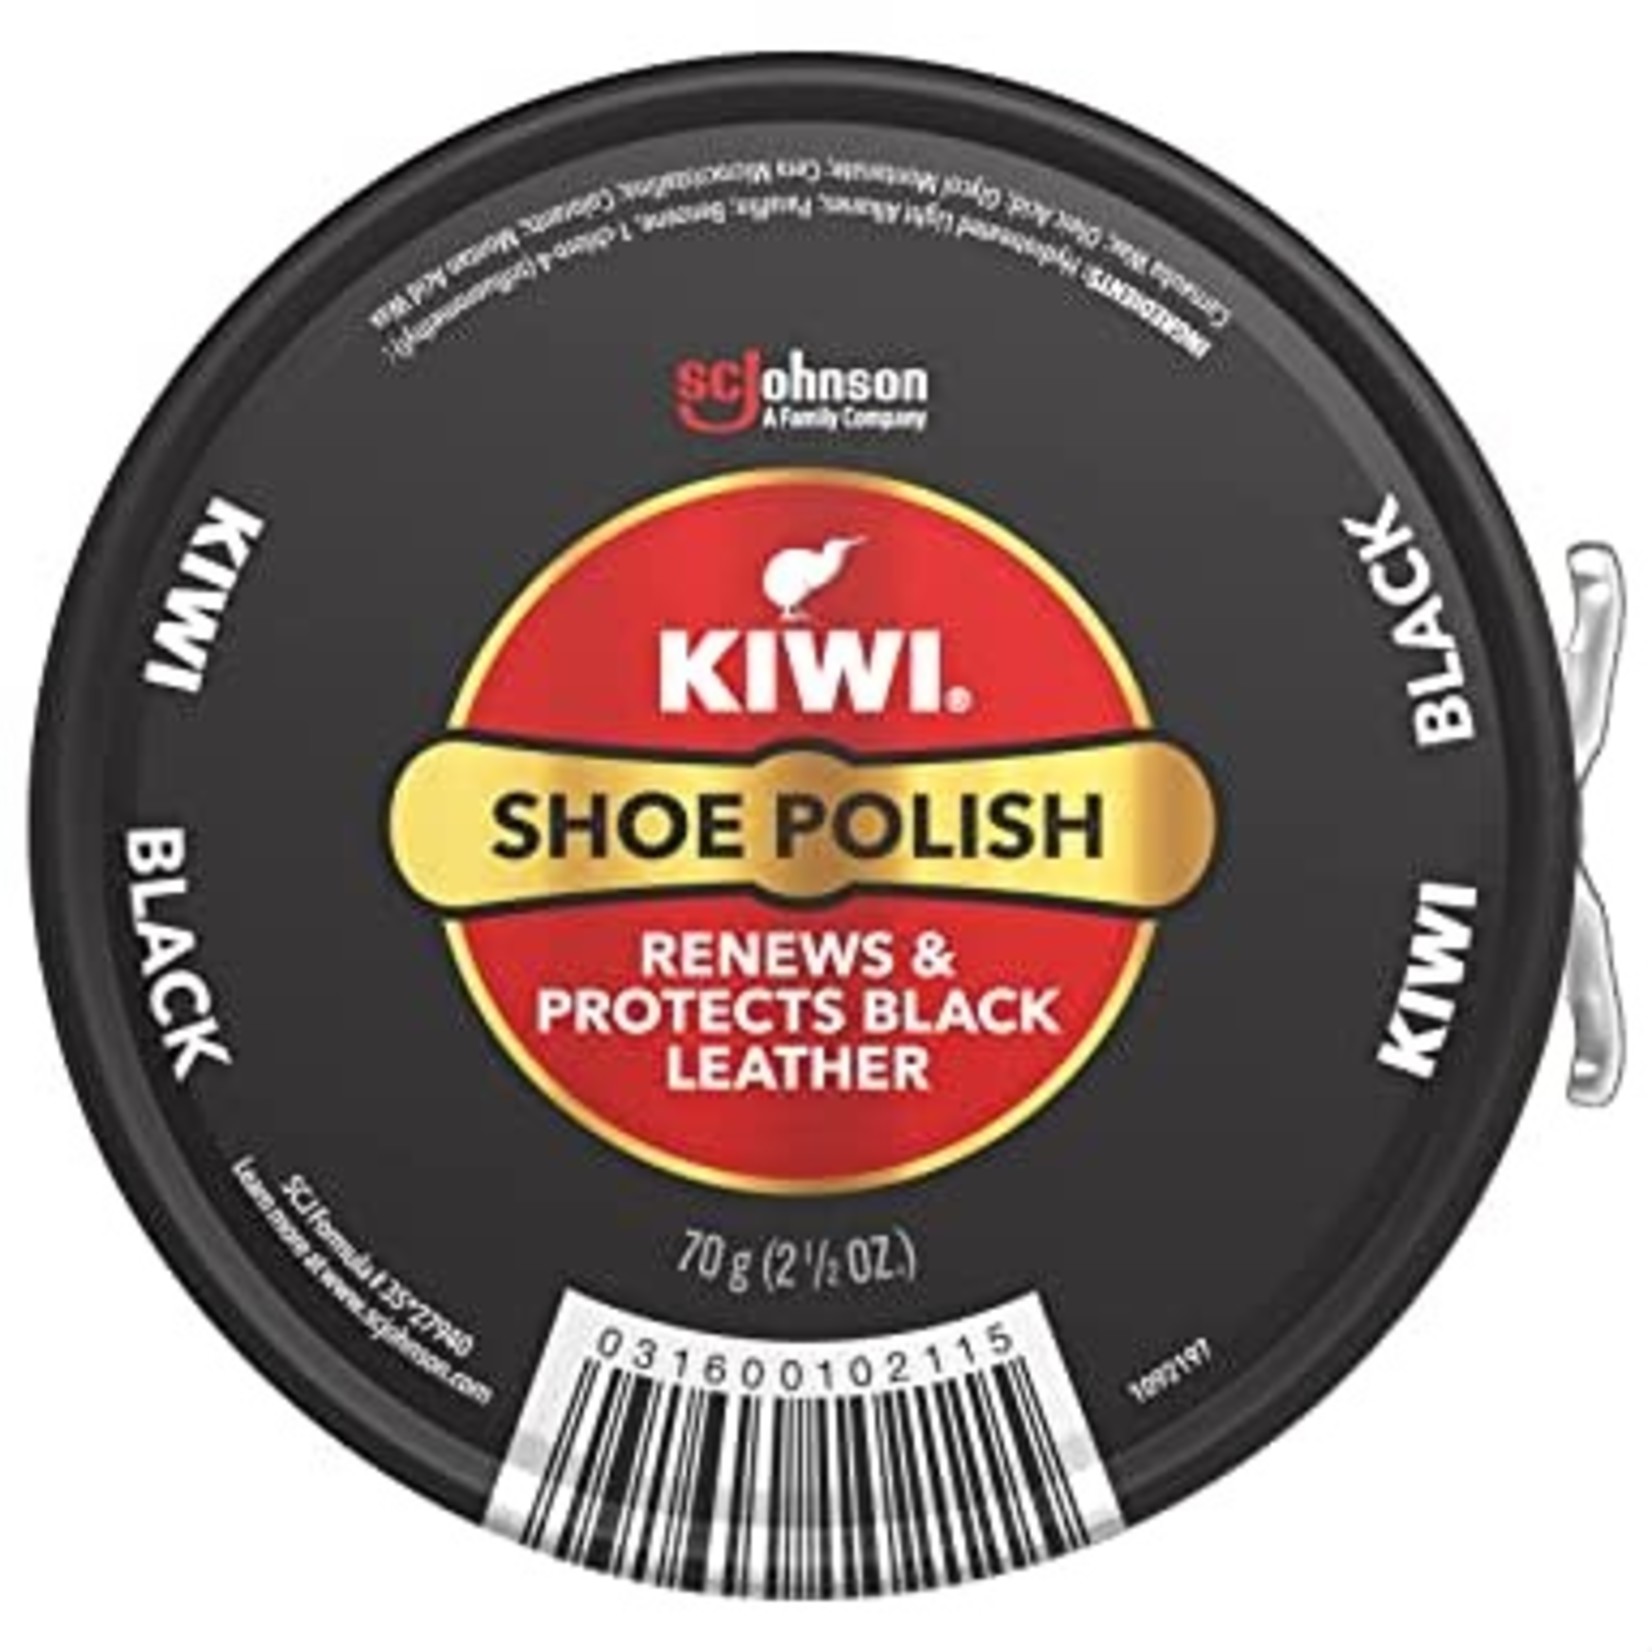 Kiwi polish 1 1/8 OZ